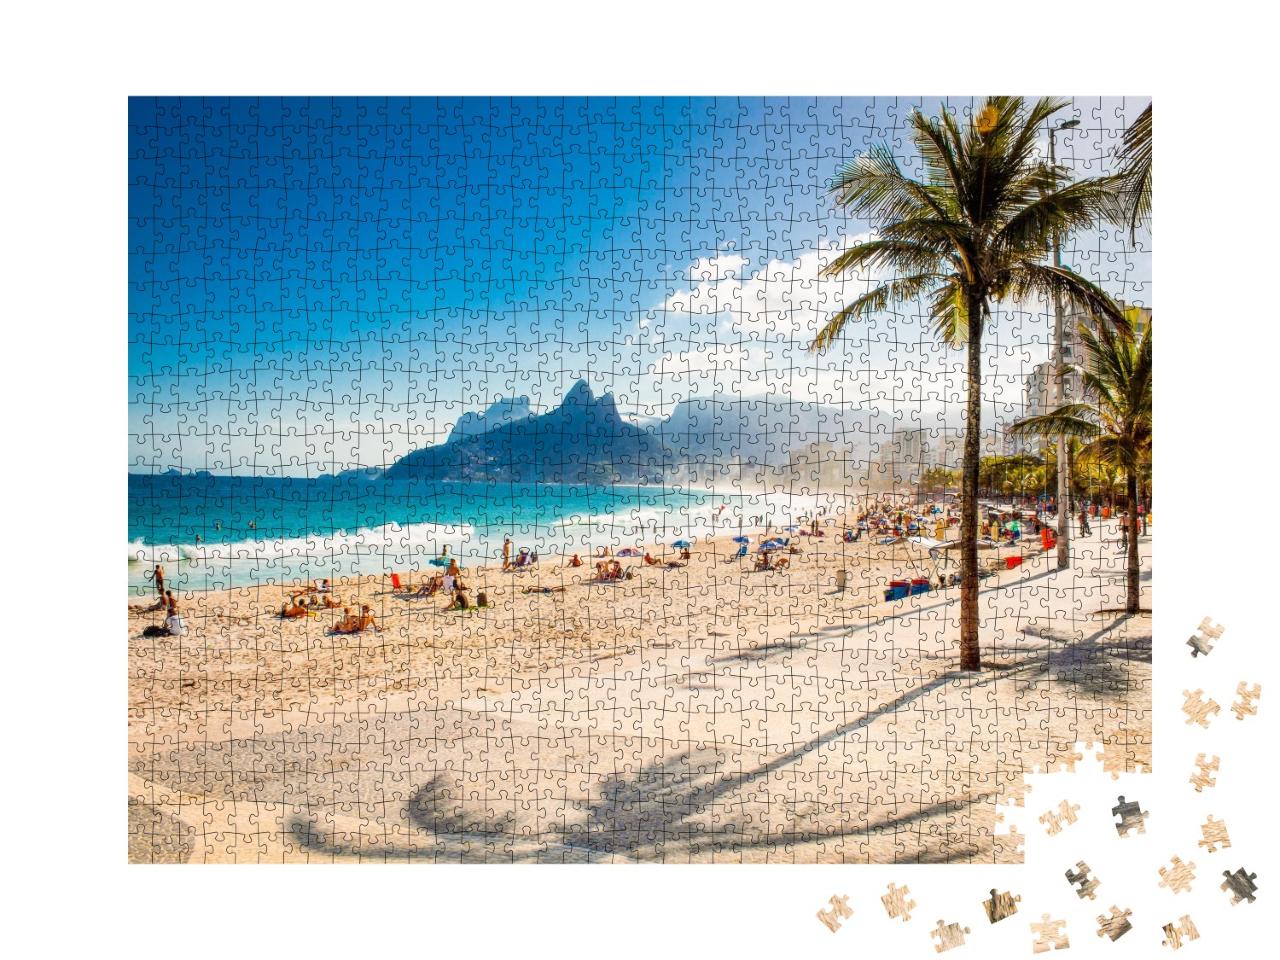 Puzzle de 1000 pièces « Palmiers et montagne des Deux Frères sur la plage d'Ipanema, Rio de Janeiro »